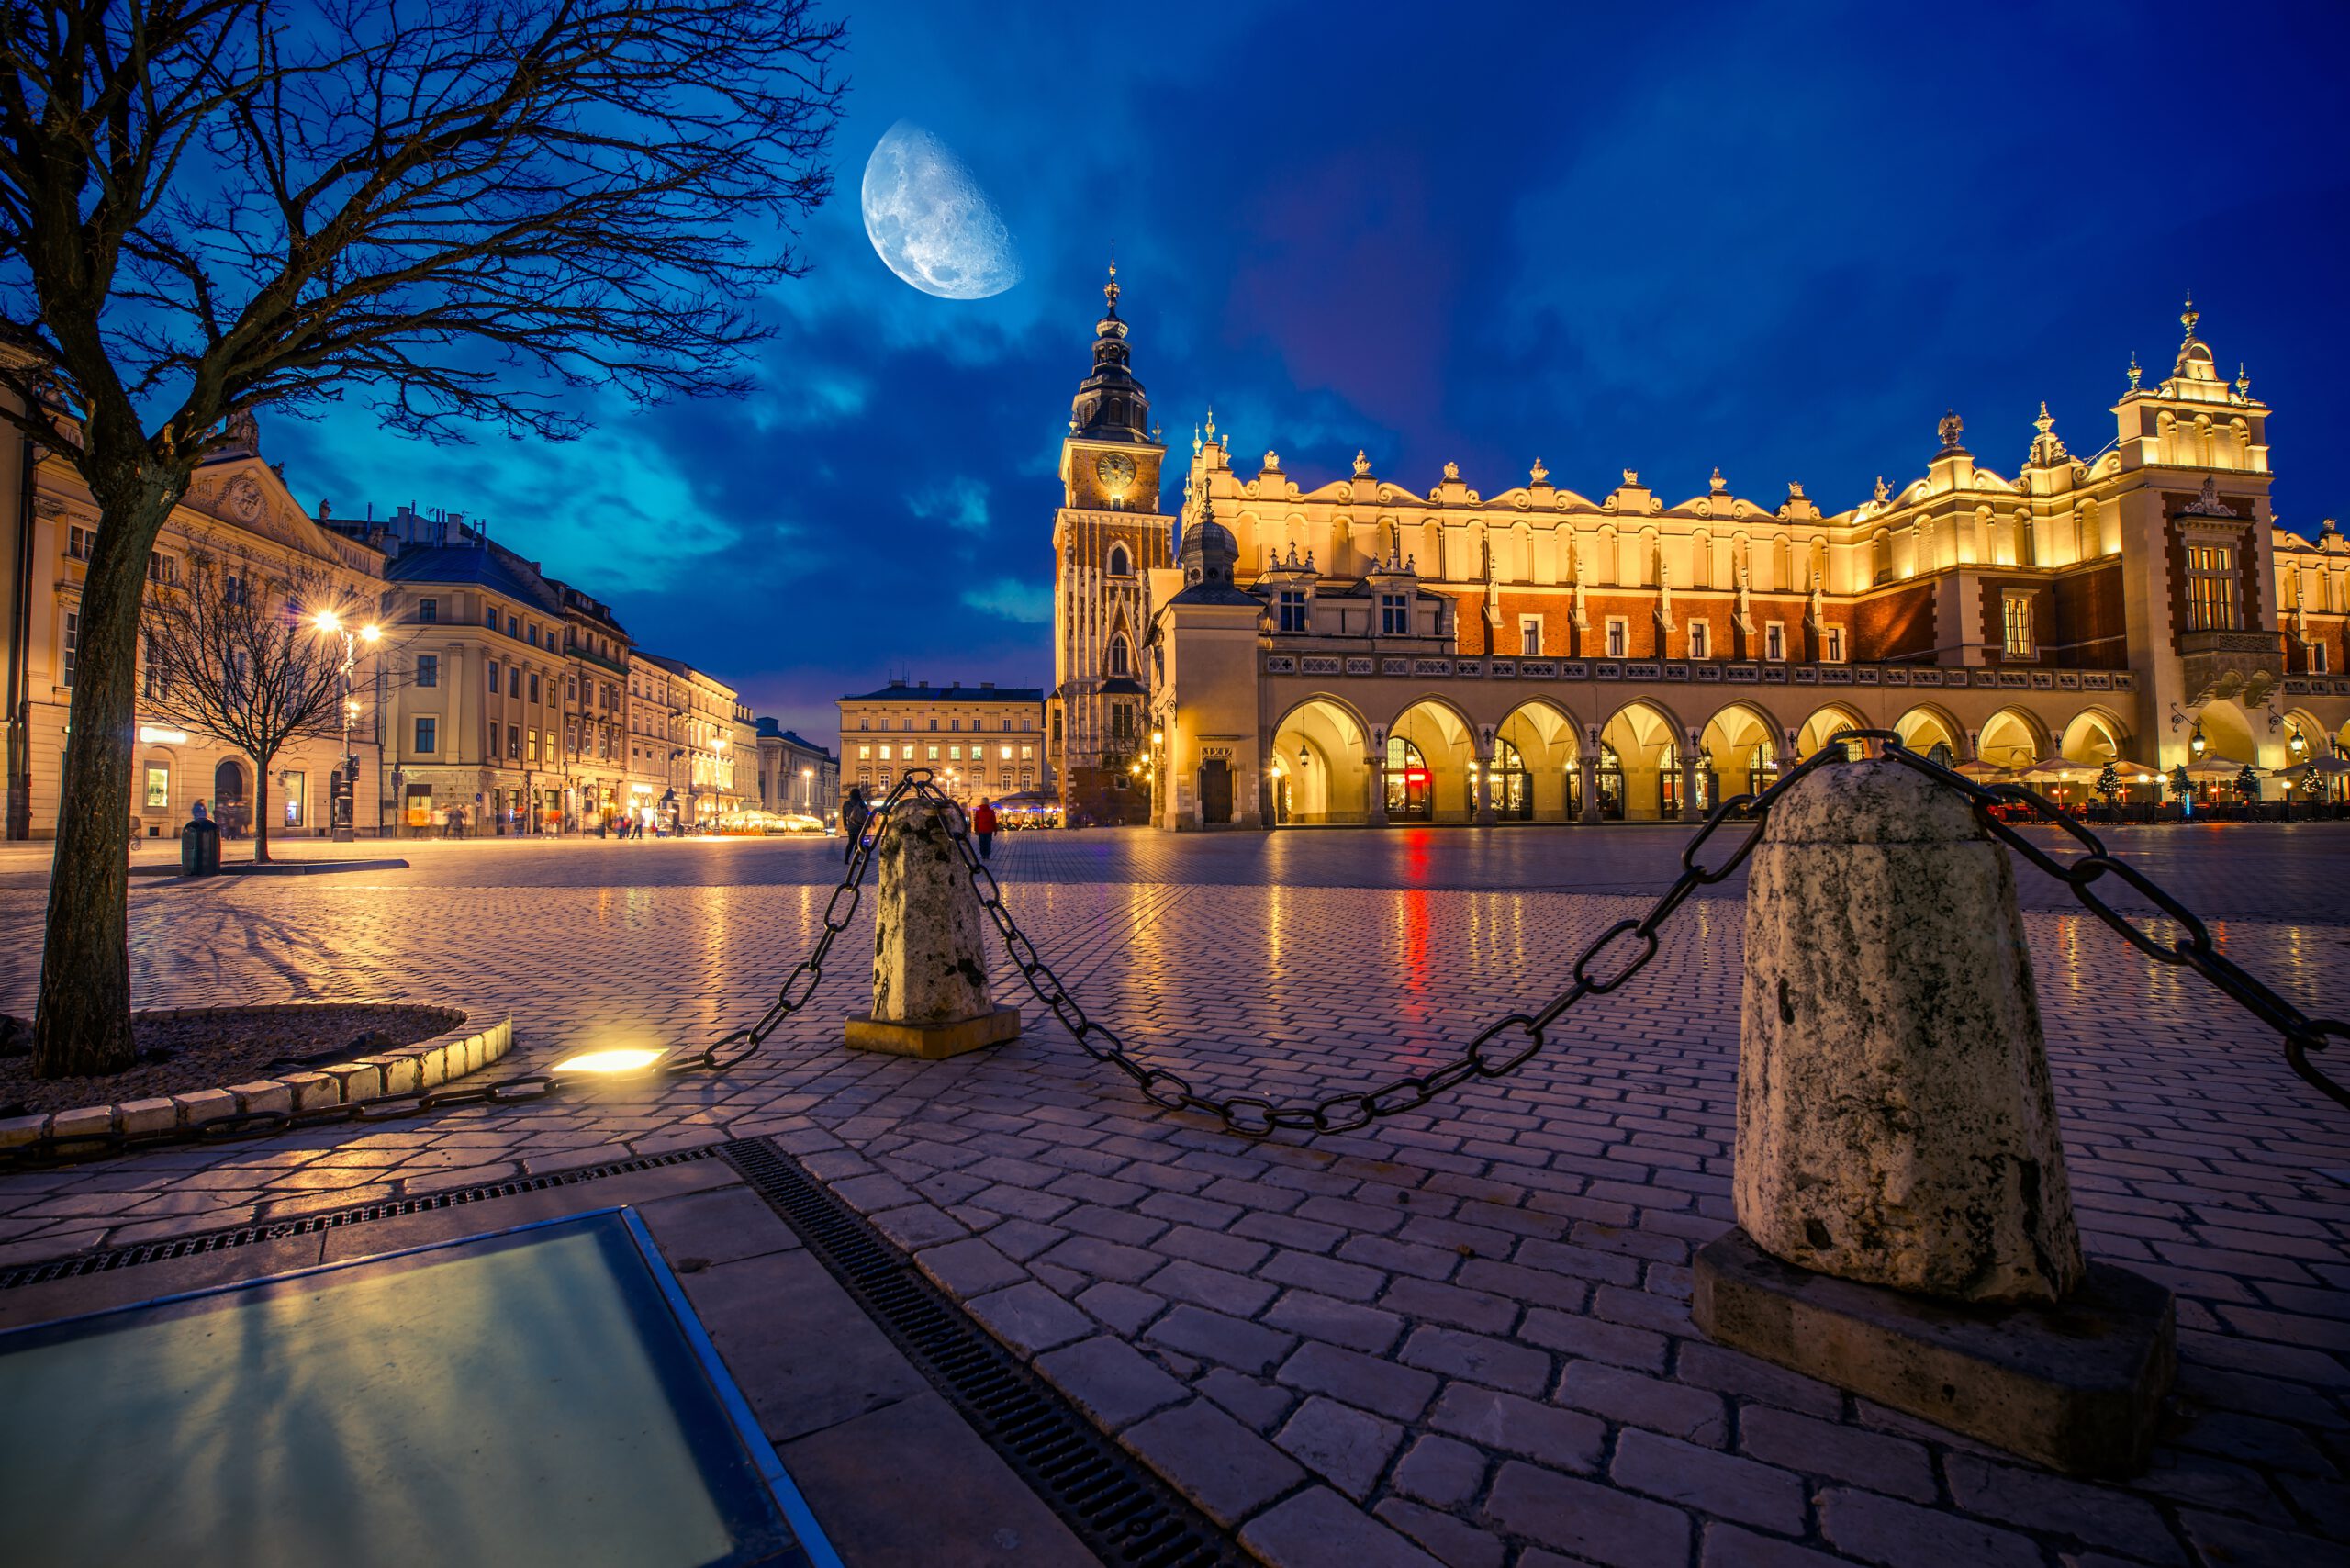 Na zdjęciu widać miasto Kraków, które jest jednym z najpiękniejszych i najważniejszych miast w Polsce. Widać na nim zabytkowe katedry, kamienice oraz rynki, które przyciągają turystów z całego świata. Zdjęcie to doskonale ilustruje, jak ważne jest zachowanie dziedzictwa kulturowego i historycznego polskich miast, które stanowią nie tylko piękne i malownicze krajobrazy, ale również świadectwo historii i kultury naszego kraju.